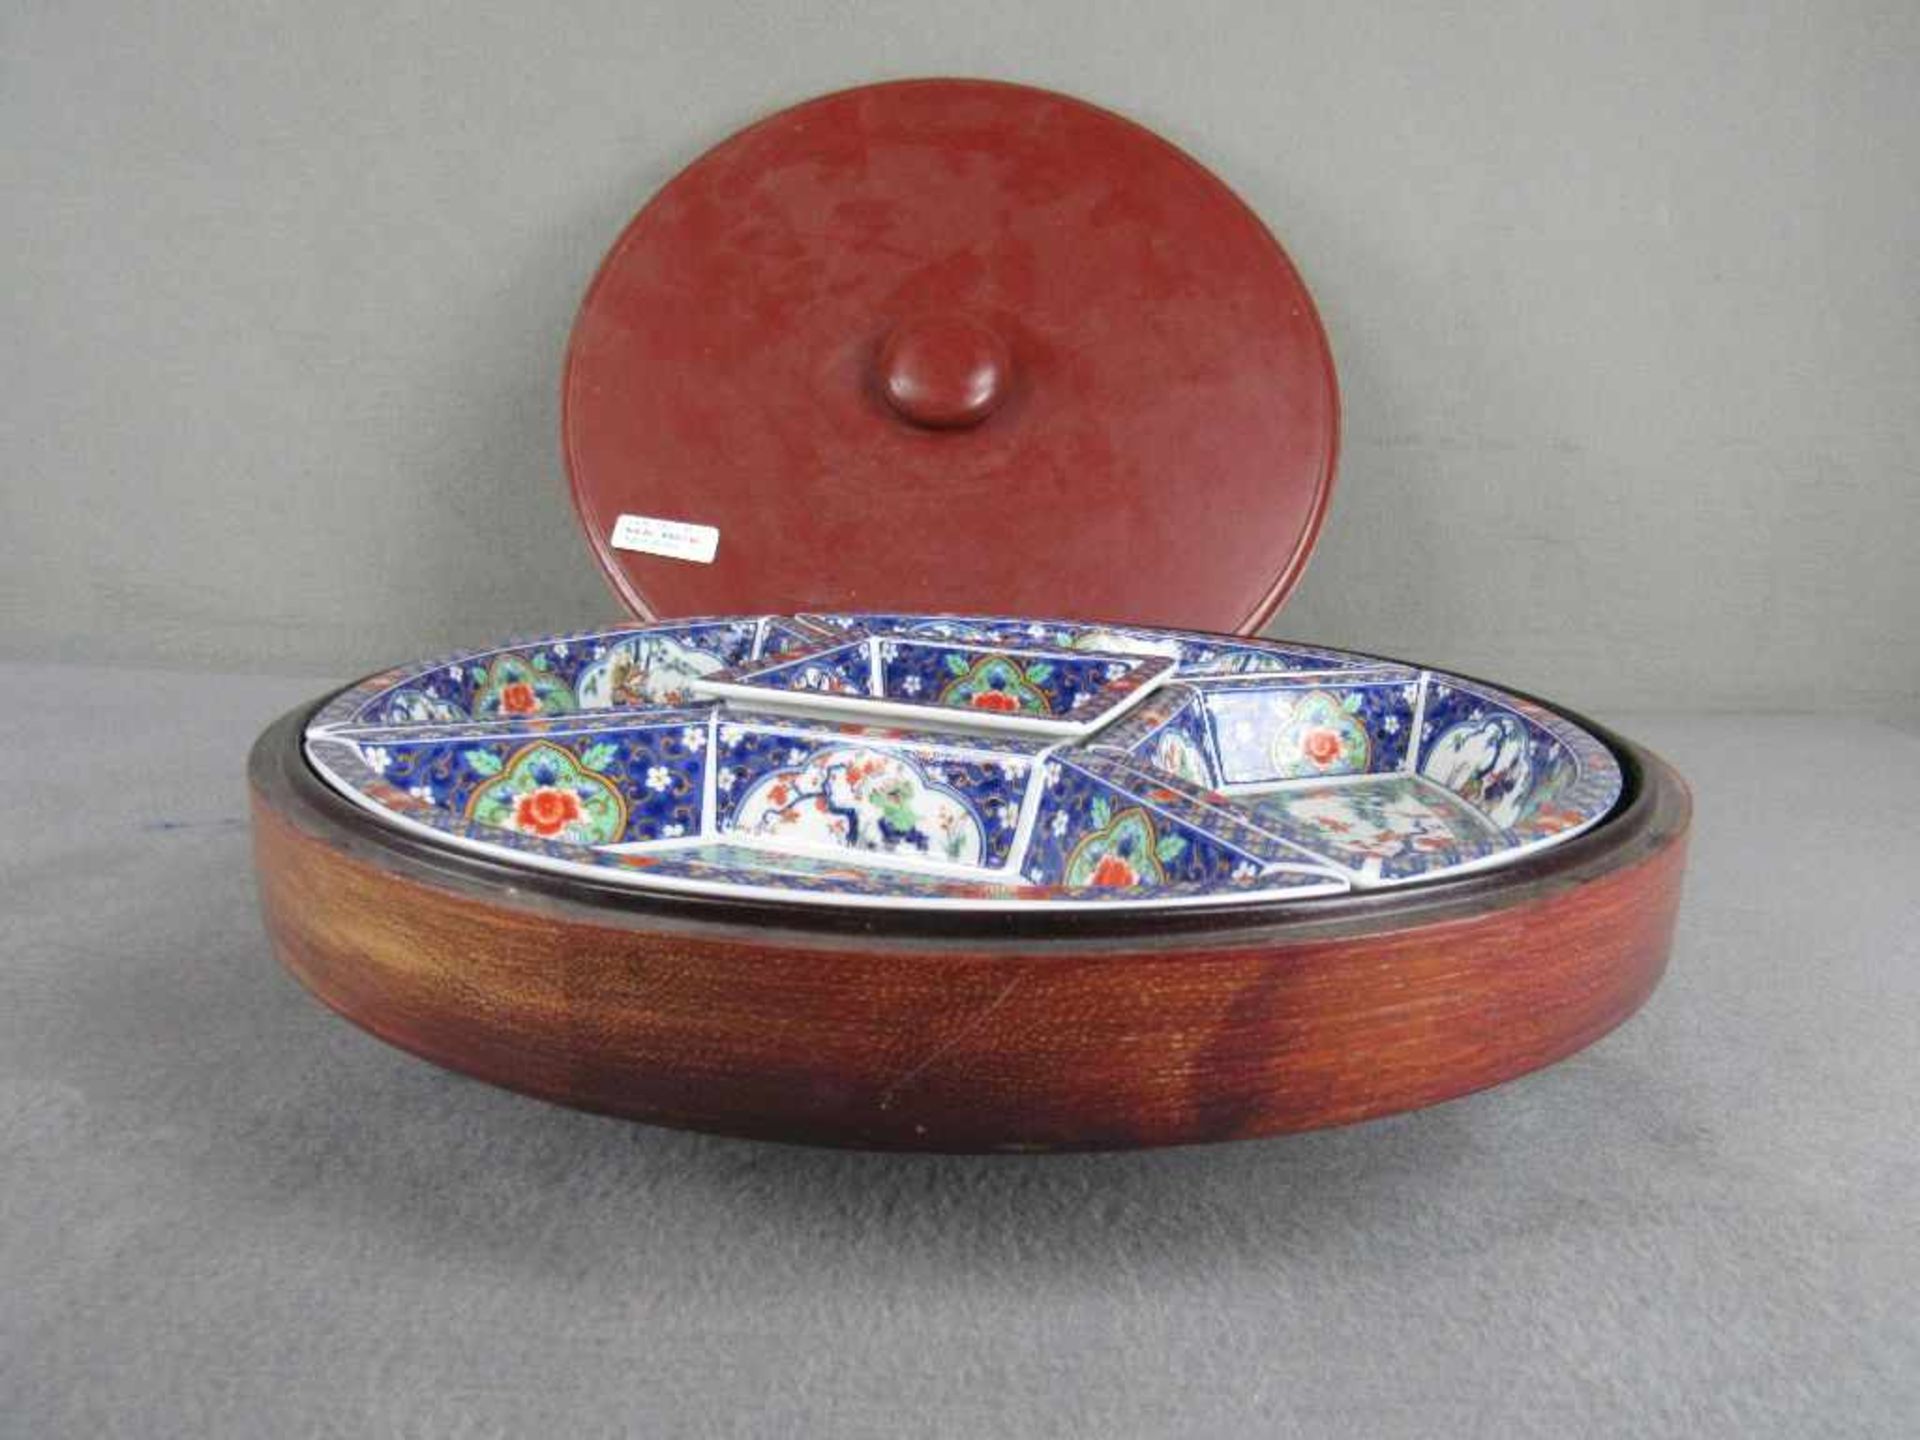 Chinesische Warmhalte bzw - Reismenagerie Schälchen in lasierter Keramik drehbare Holzschatulle - Image 2 of 5